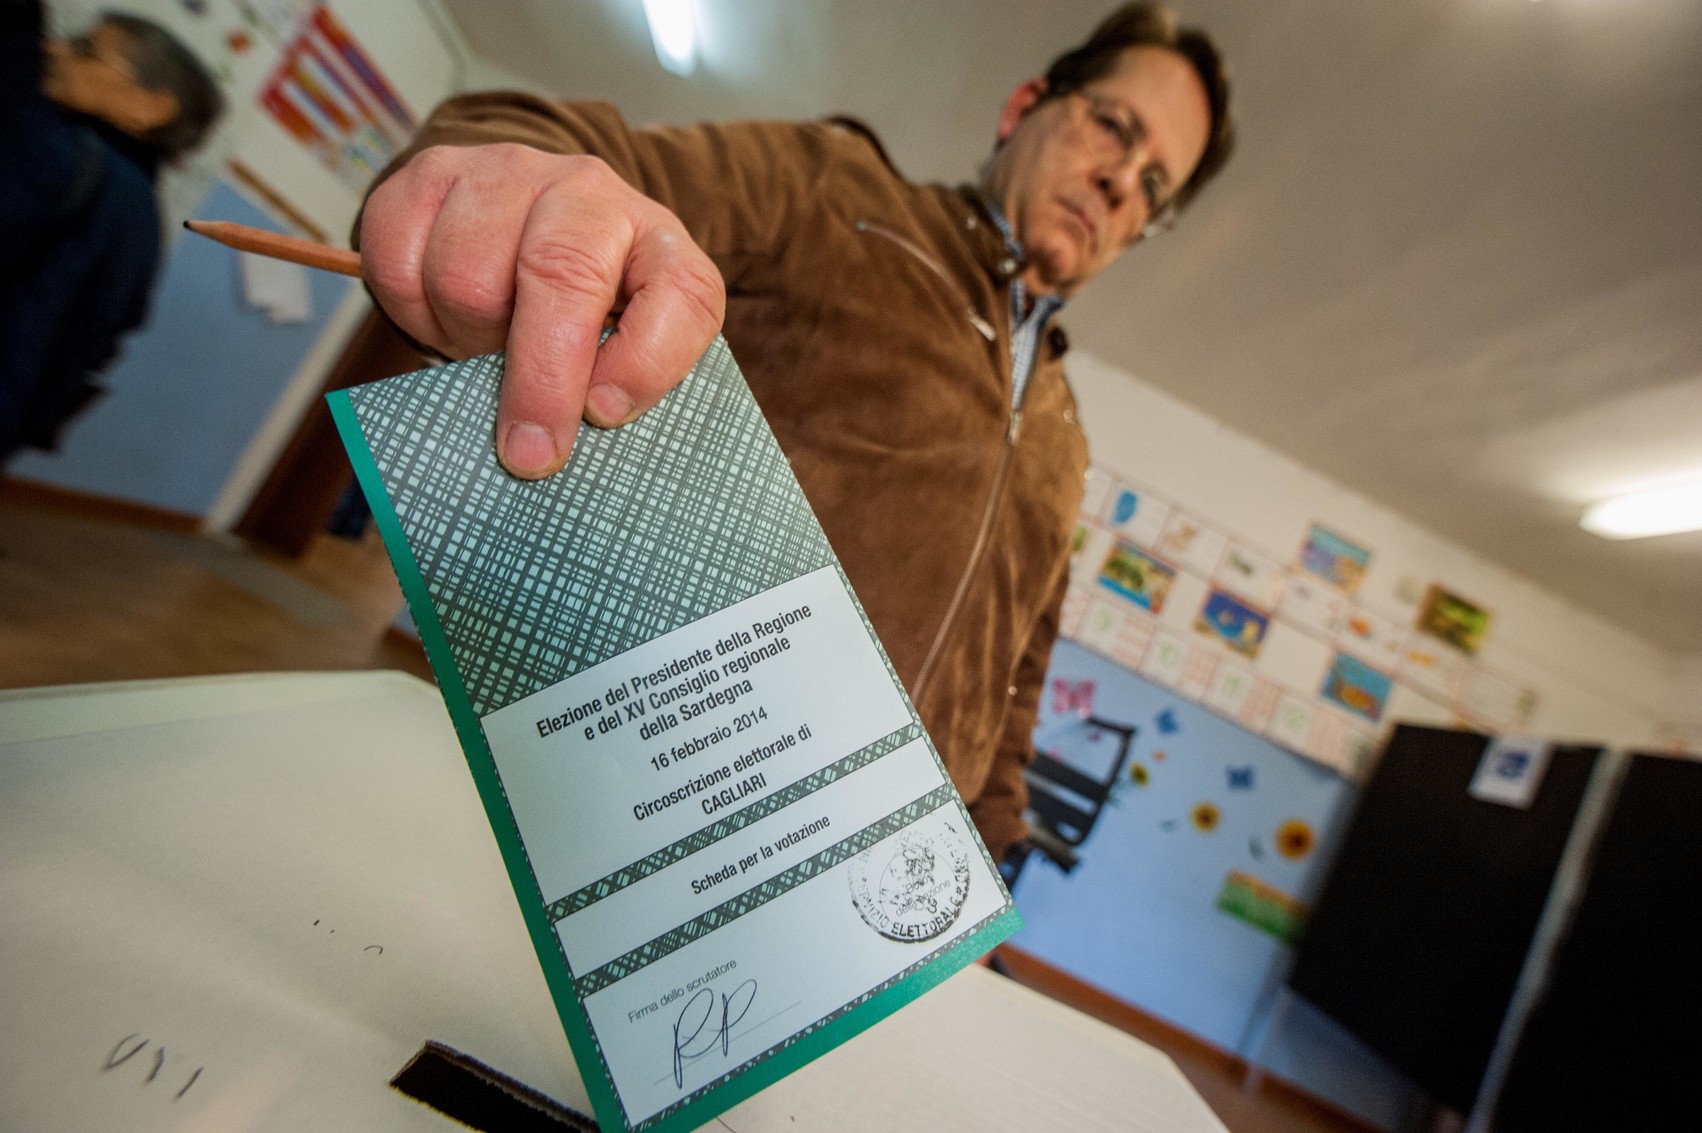 Regionali, Sardegna al voto il 24 febbraio: tutto quello che c’è da sapere